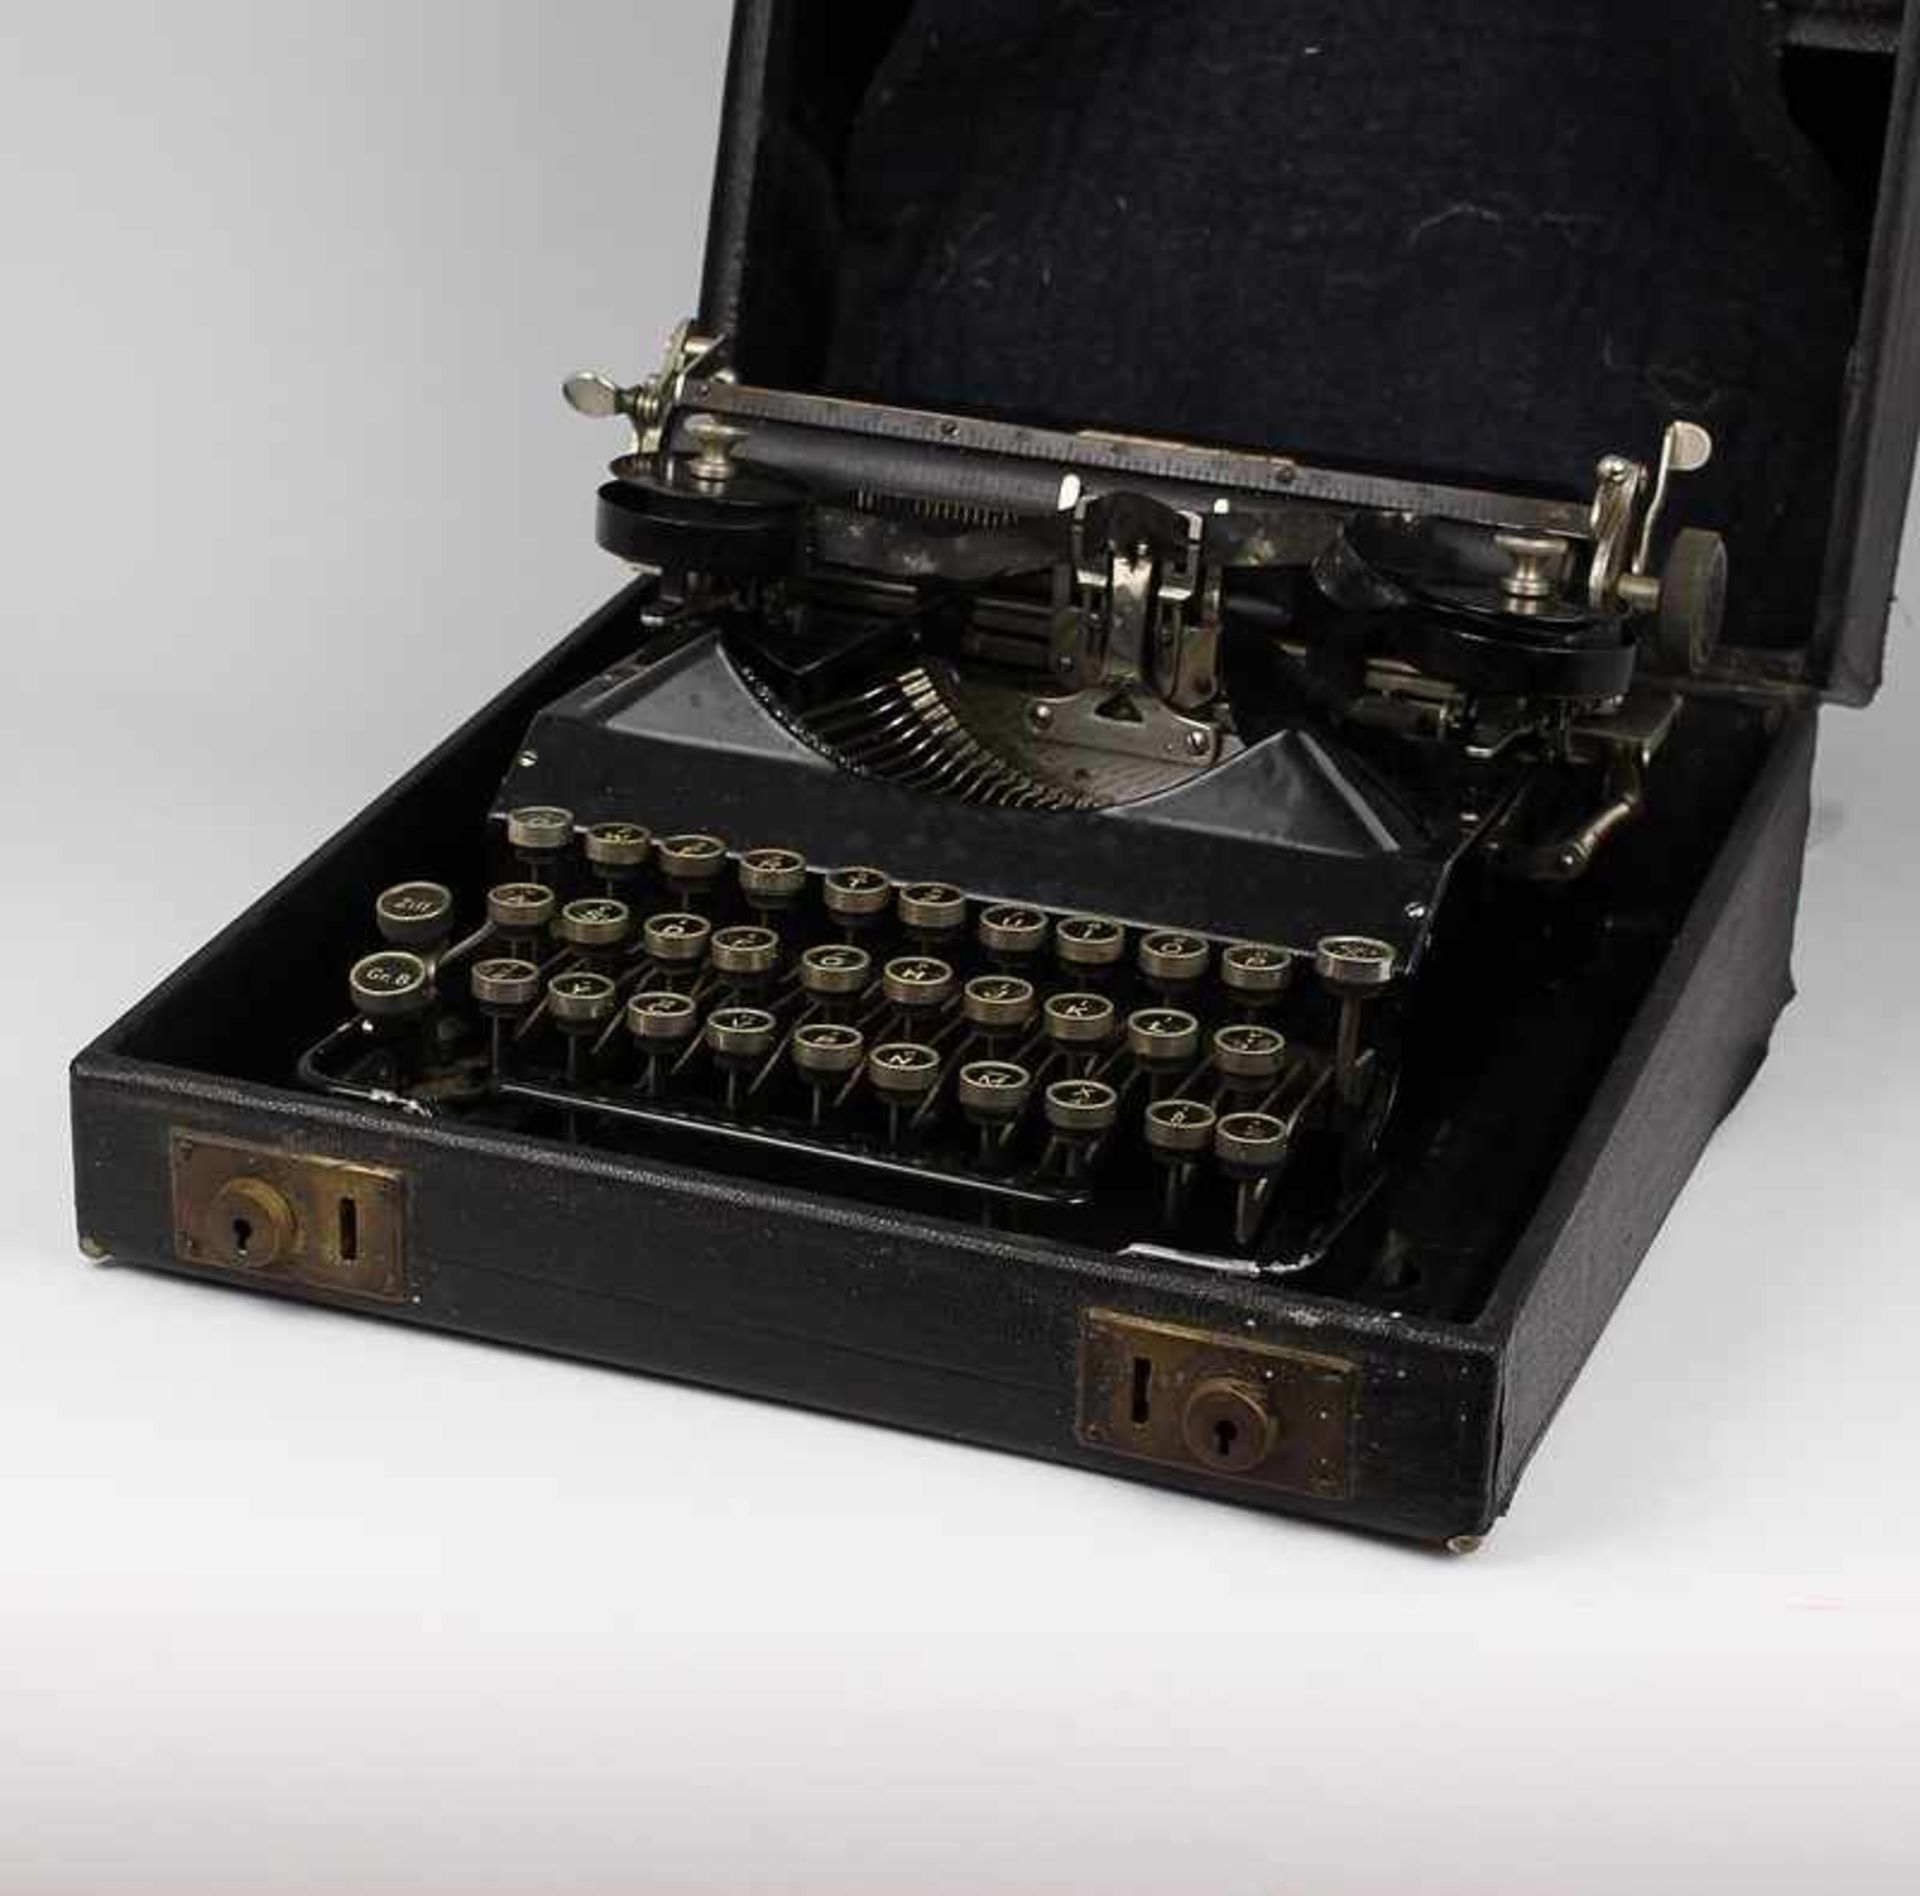 Schreibmaschine um 1910/20, Modell Senta, Reiseschreibmaschine im Holzkoffer, schwarz, Alters- u.